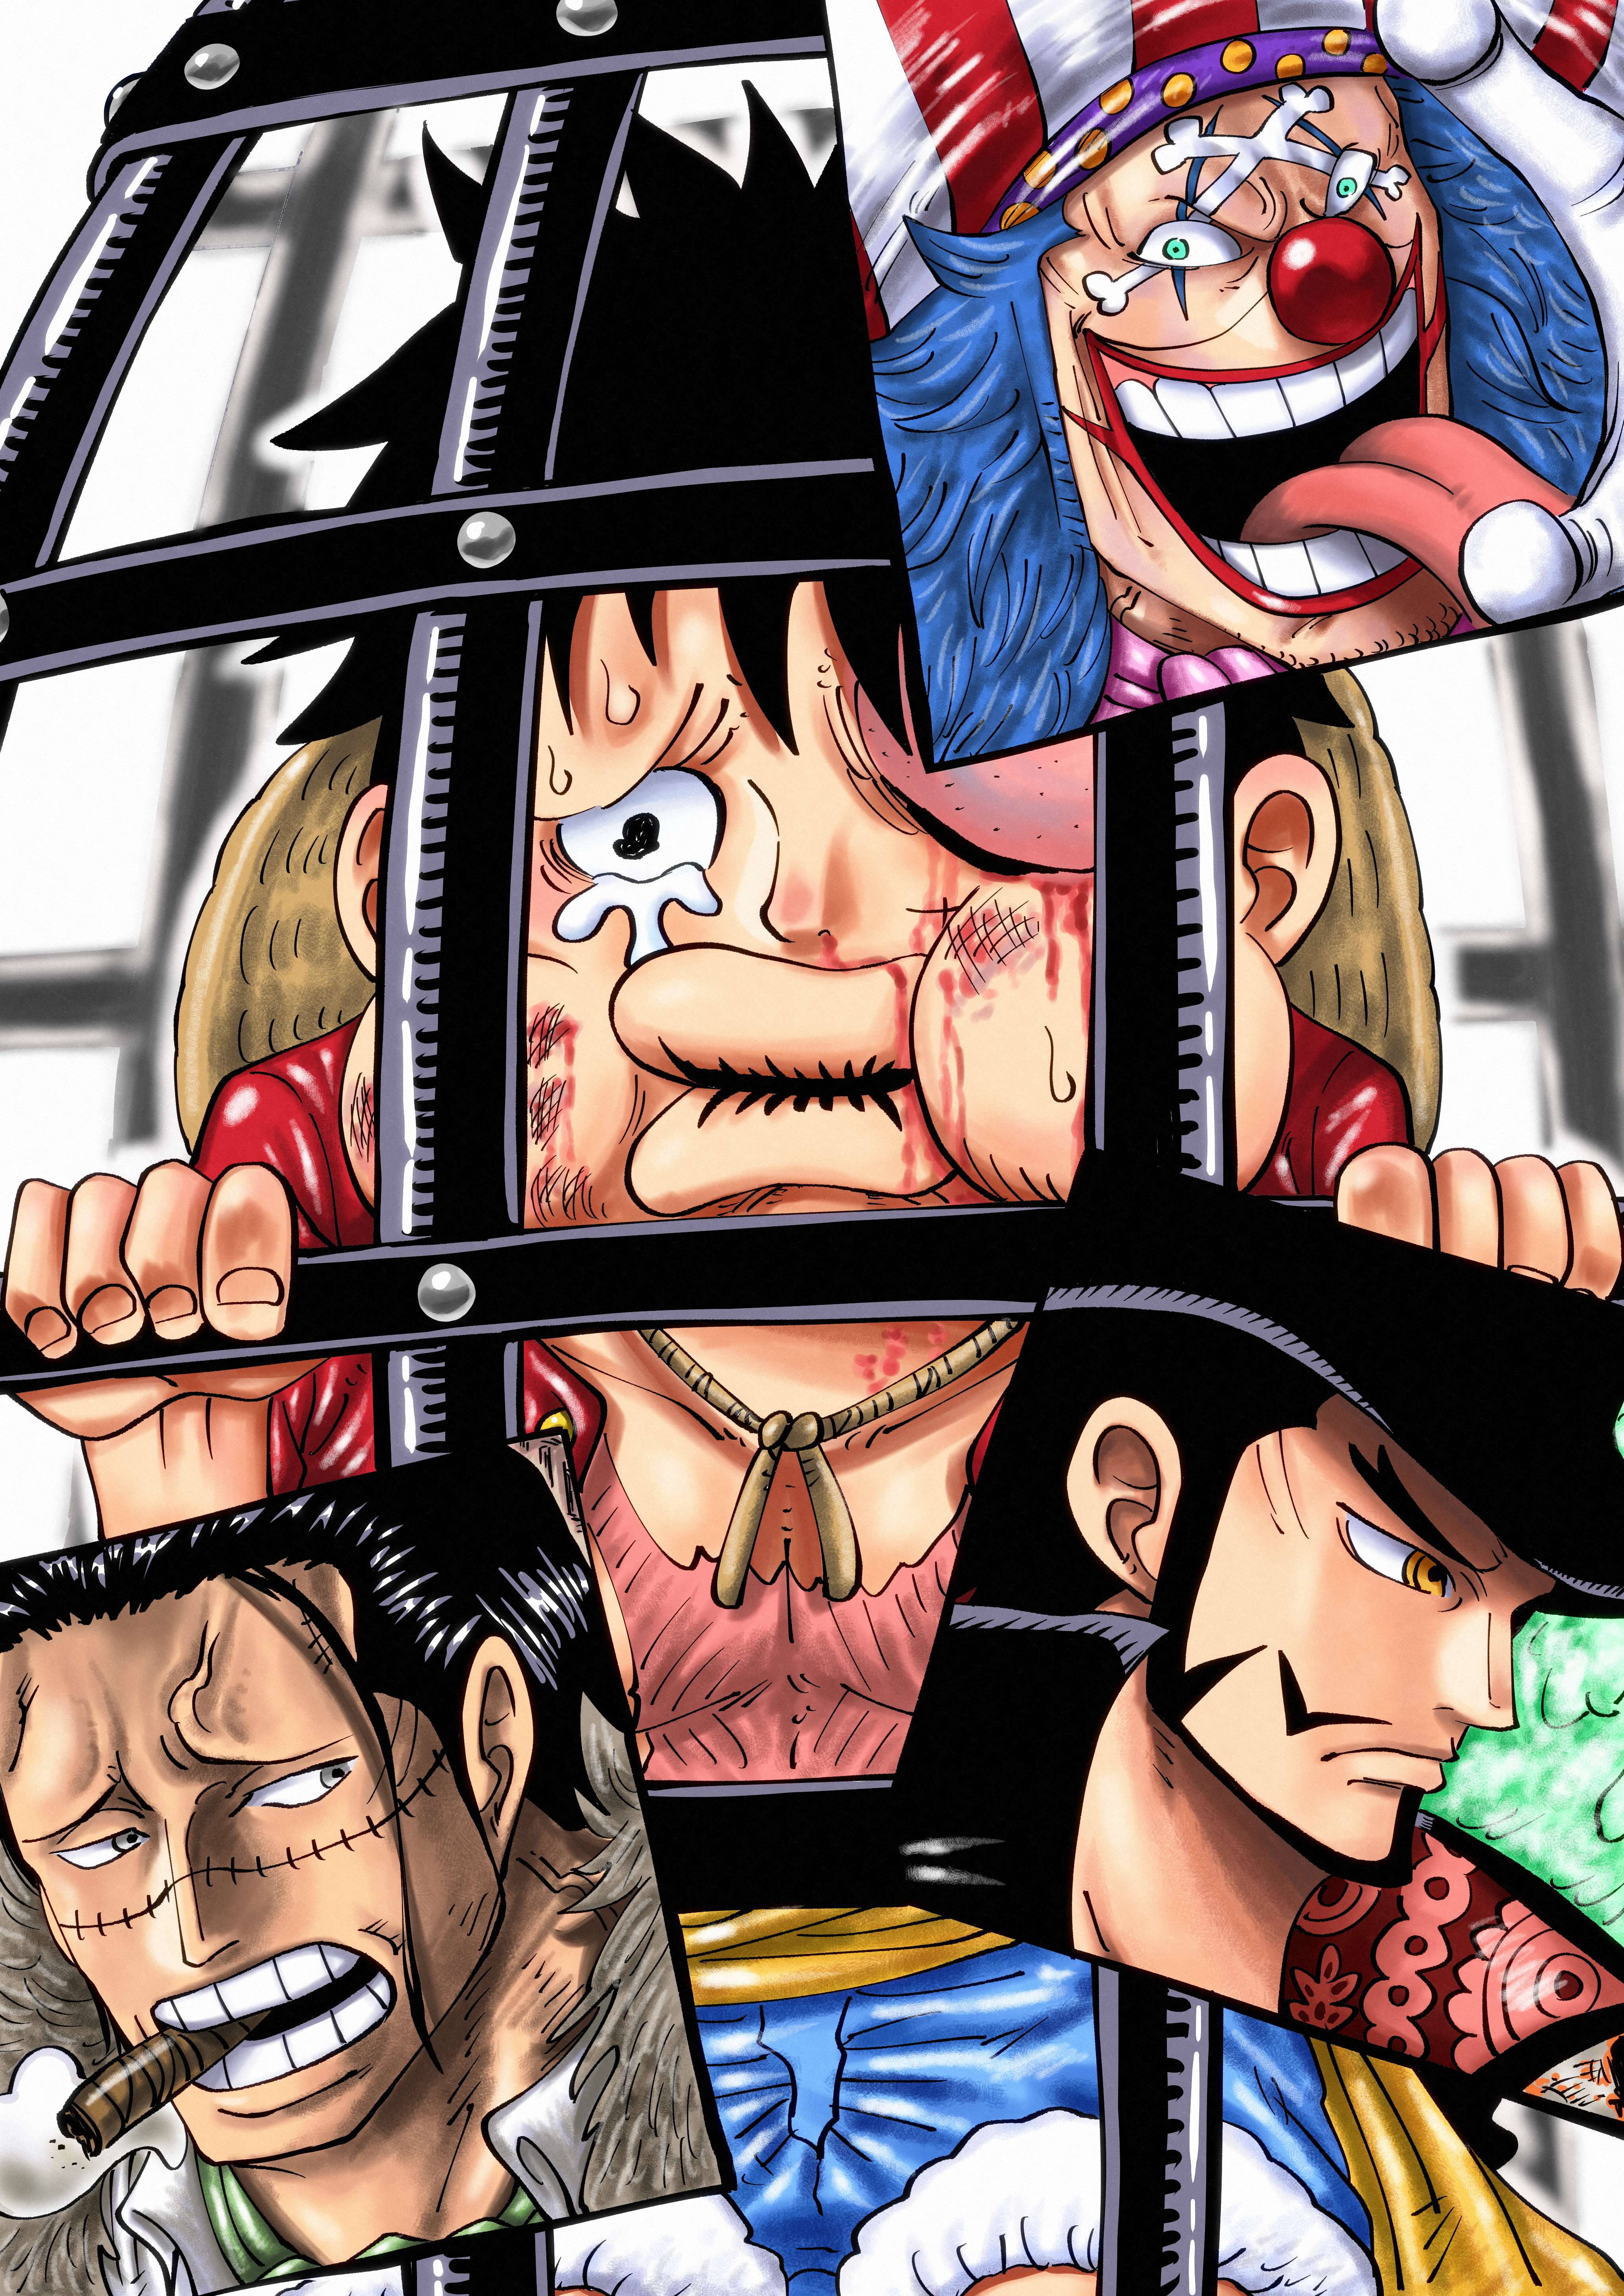 Anime One Piece Art by Riku